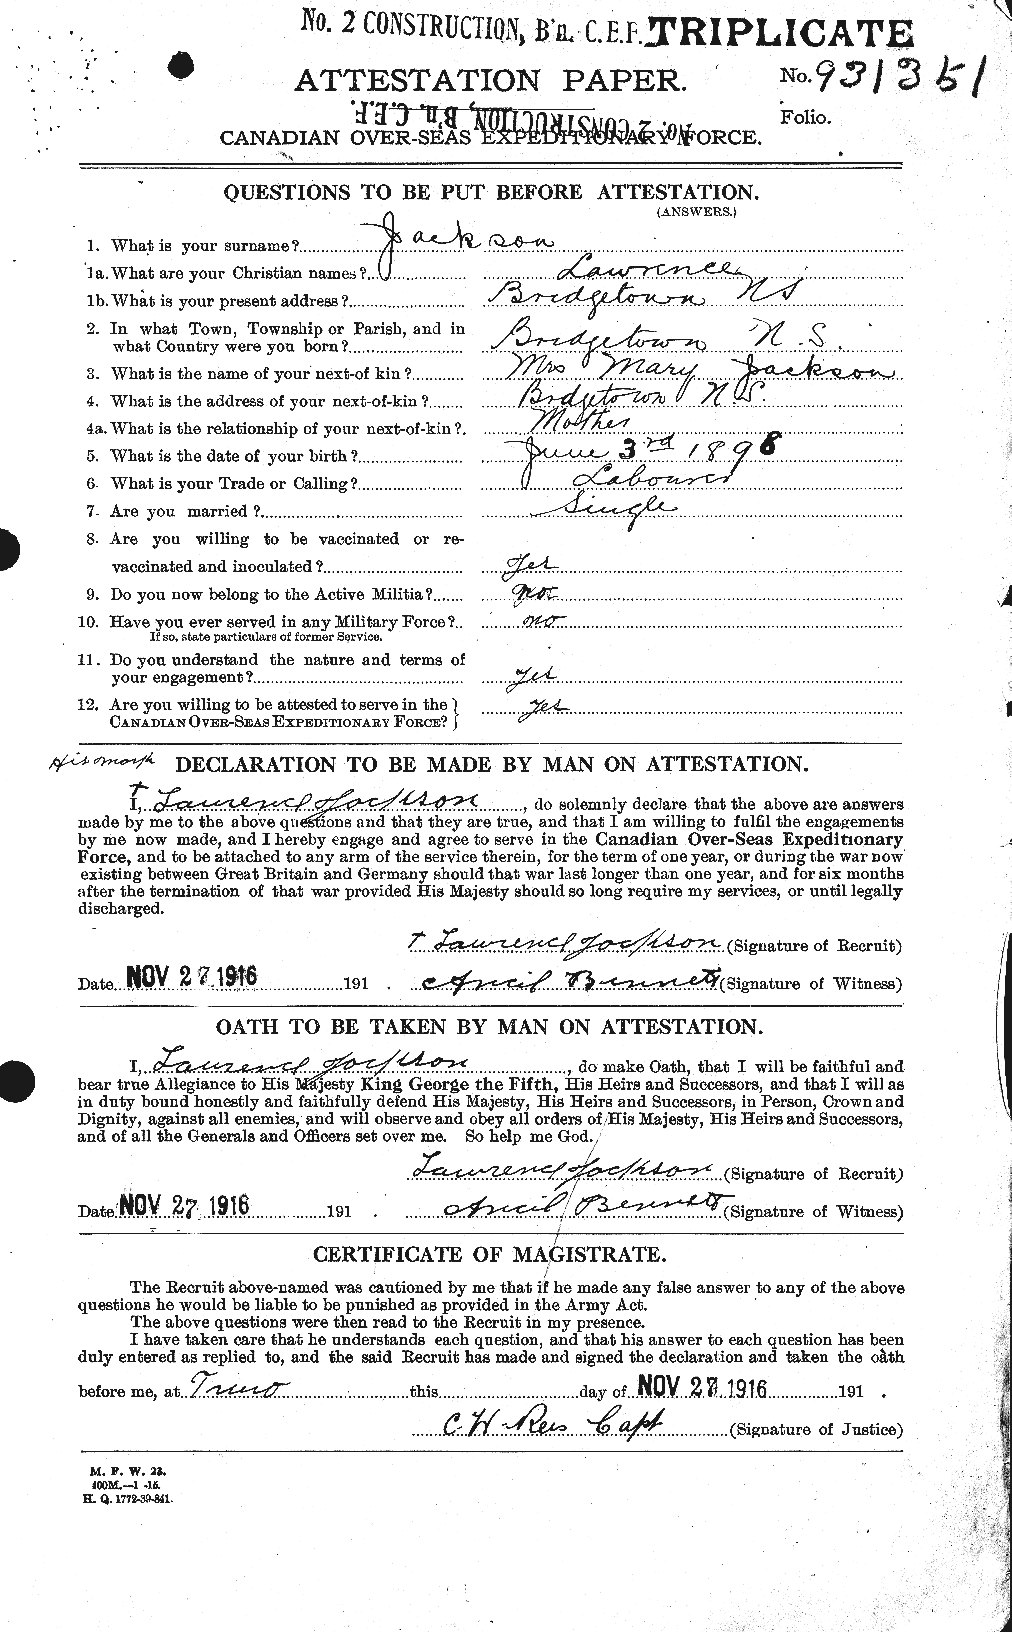 Dossiers du Personnel de la Première Guerre mondiale - CEC 414386a